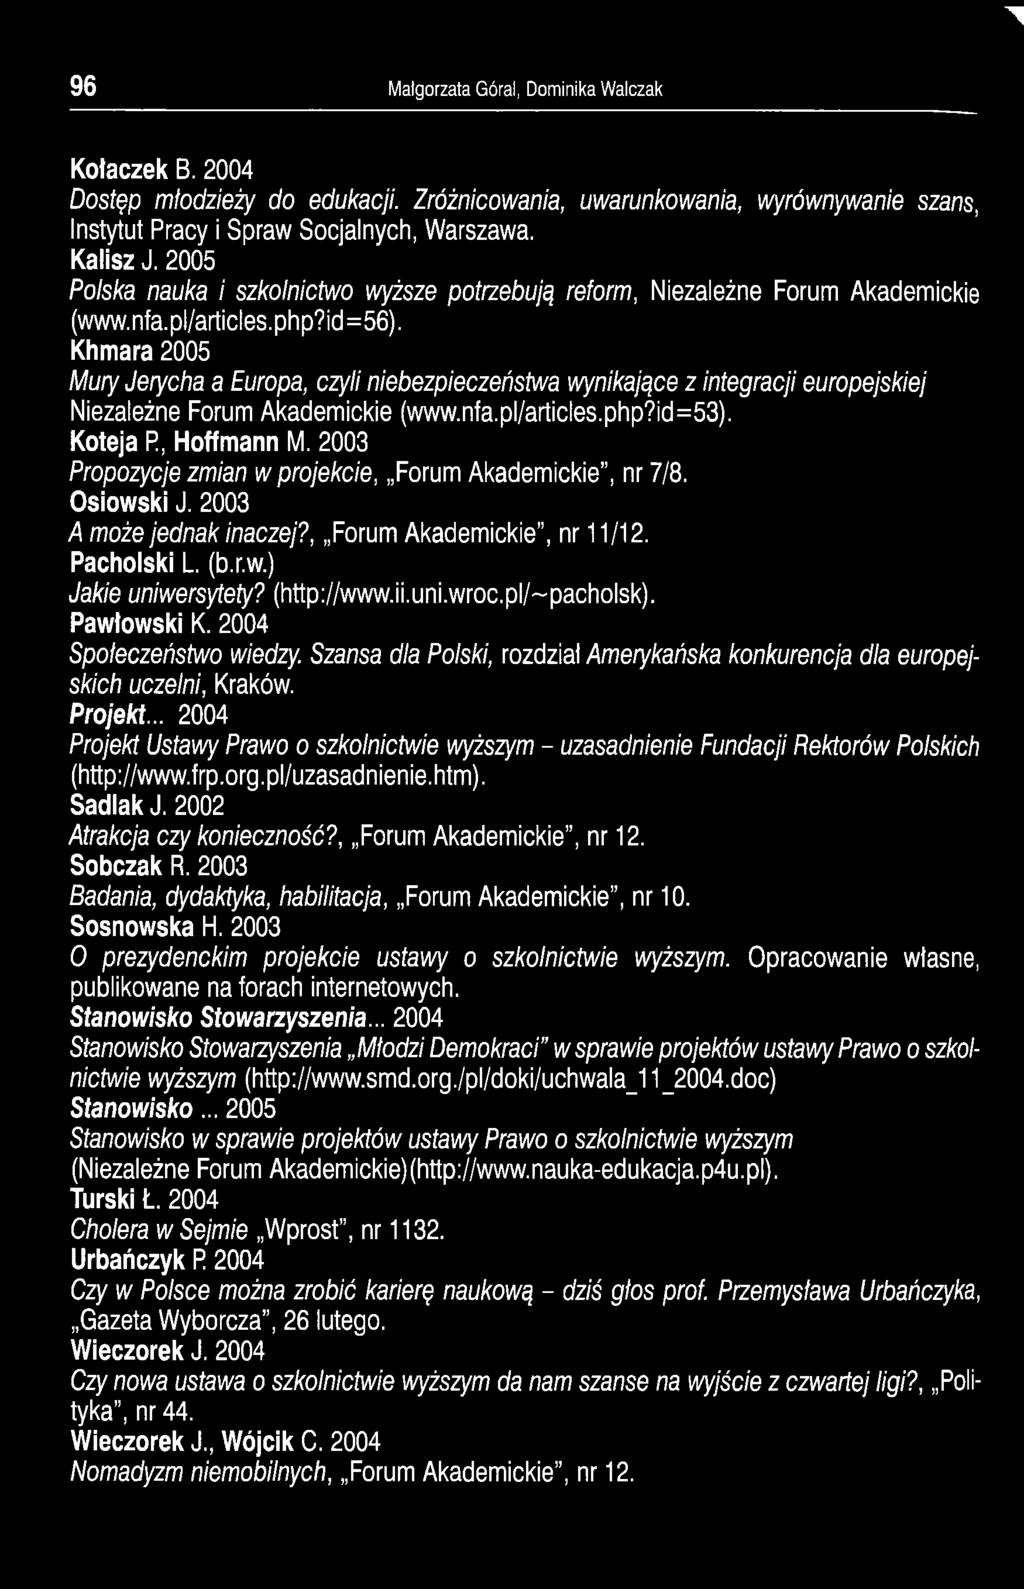 pl/~pacholsk). Pawłowski K. 2004 Społeczeństwo wiedzy. Szansa dla Polski, rozdział Amerykańska konkurencja dla europejskich uczelni, Kraków. Projekt.